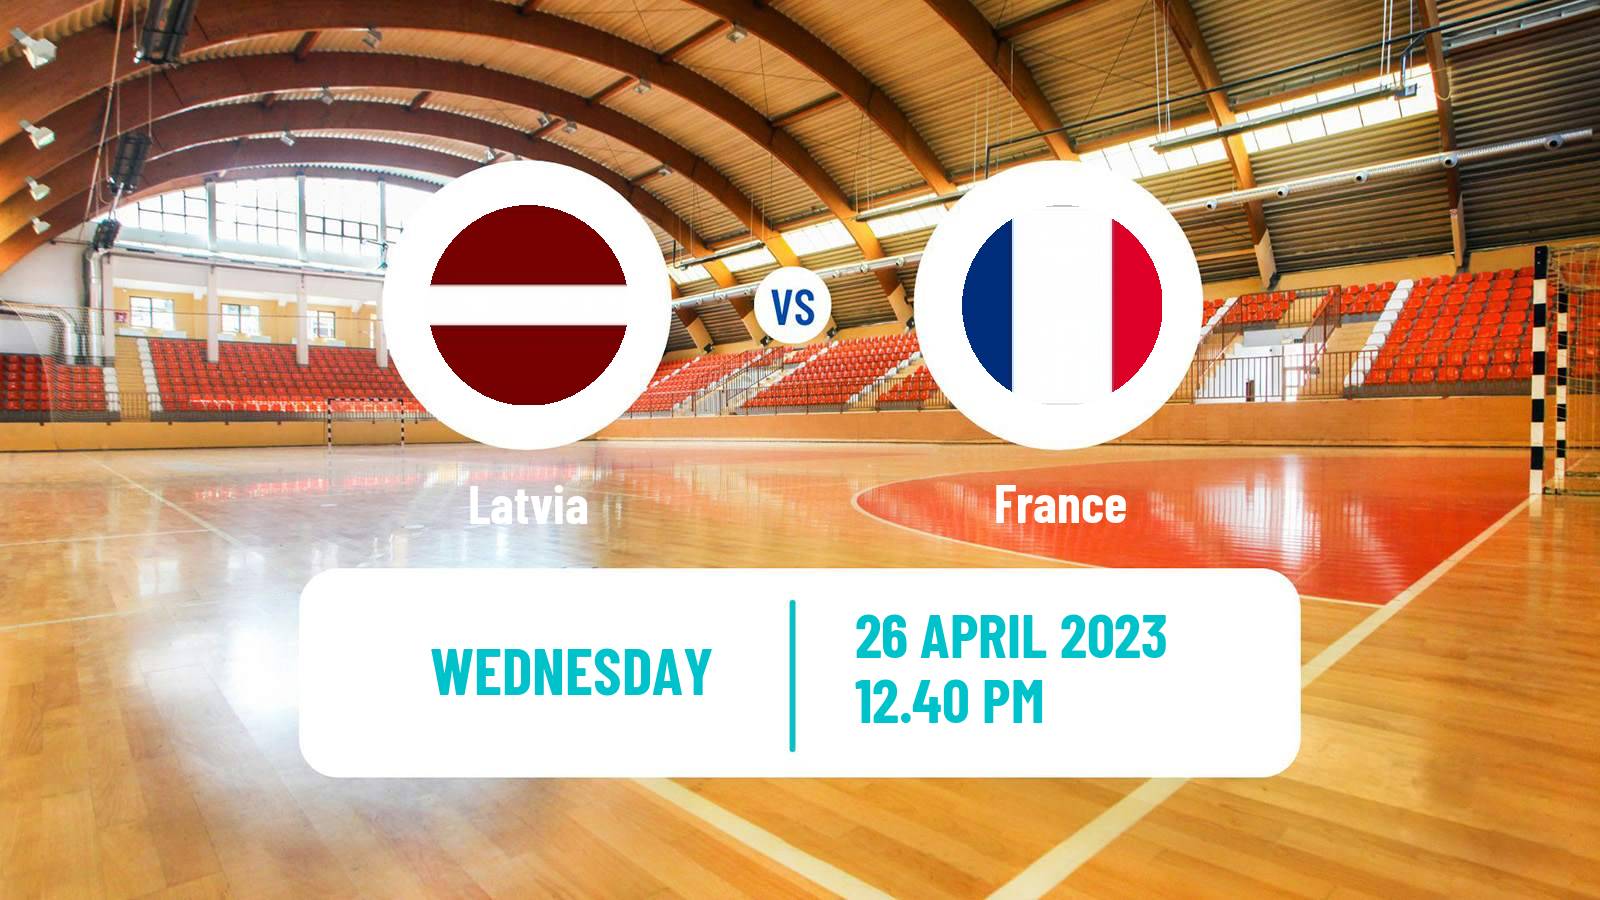 Handball Handball European Championship Latvia - France